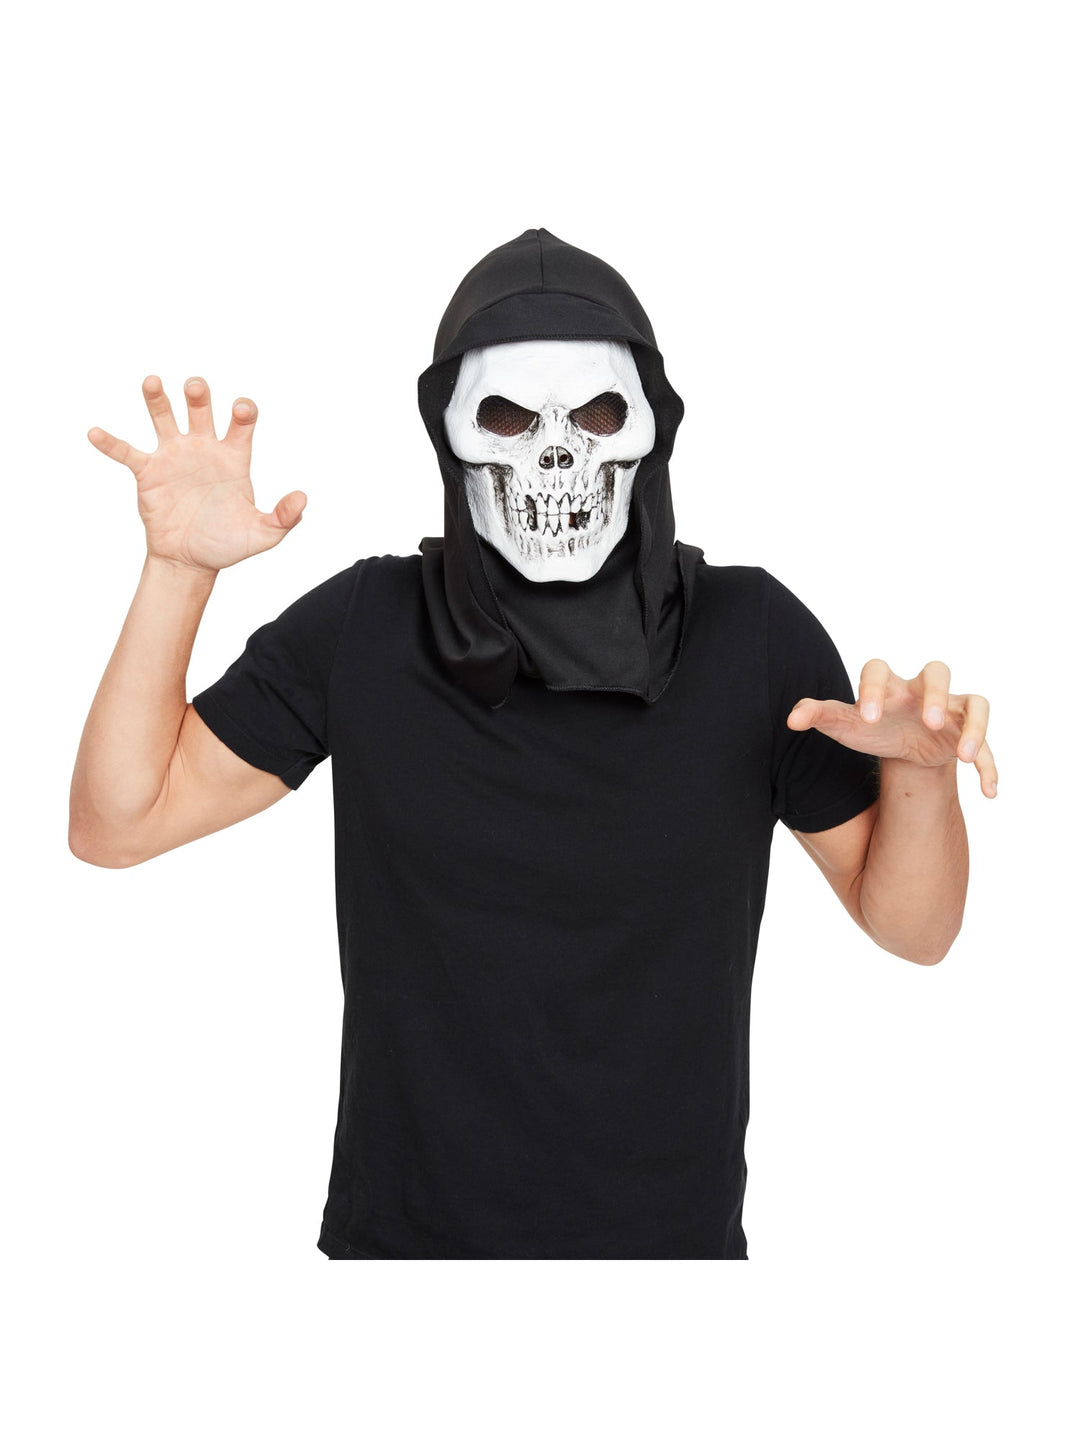 Skull Hooded Terror Mask Skeletor